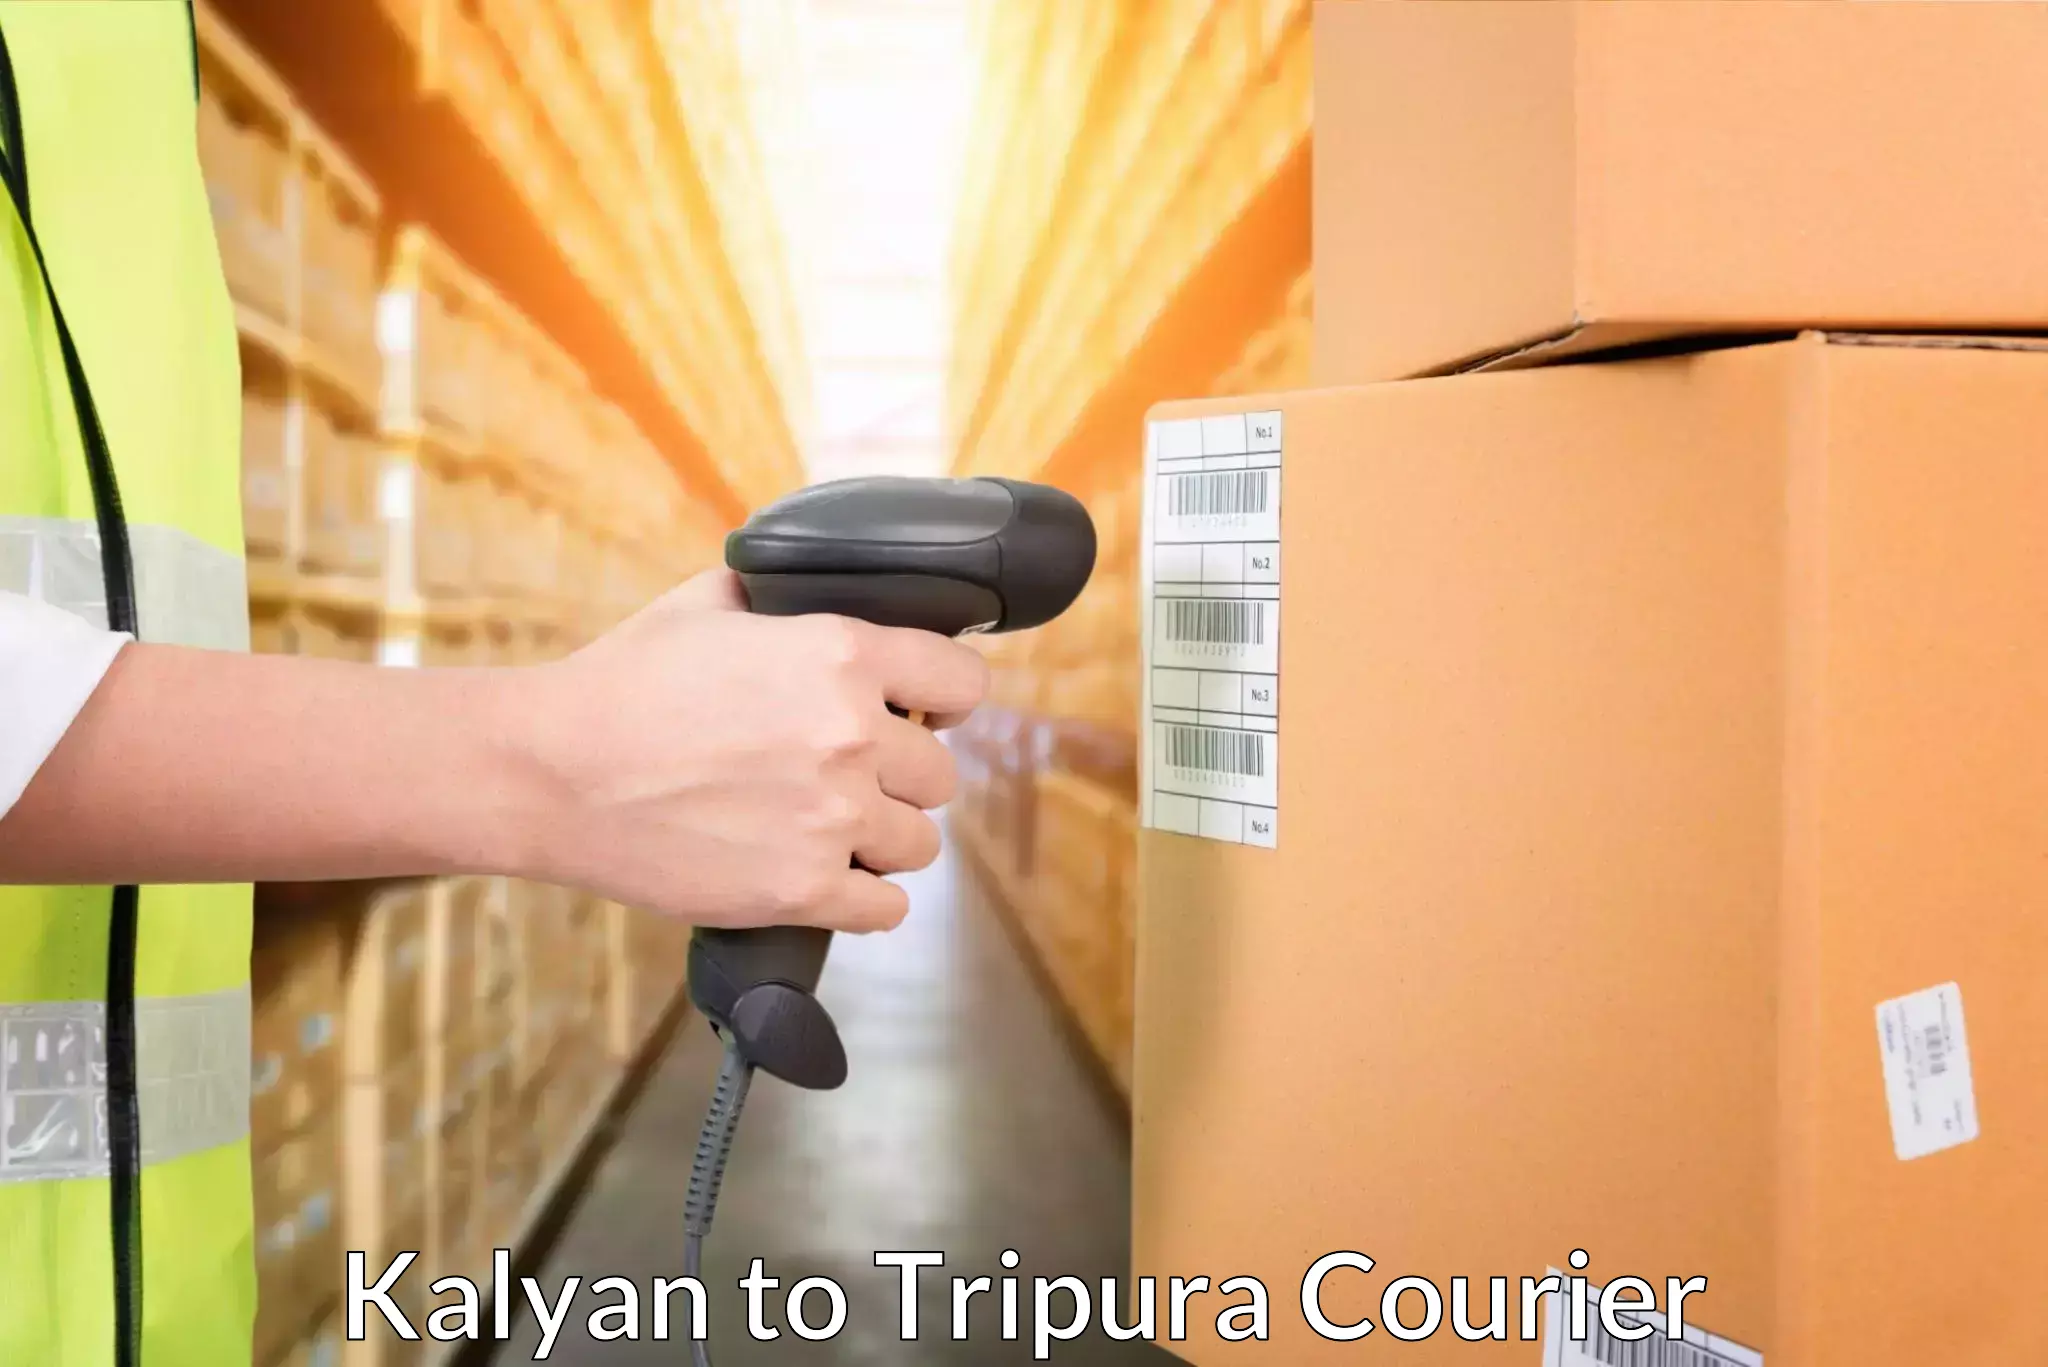 Digital courier platforms Kalyan to Dharmanagar